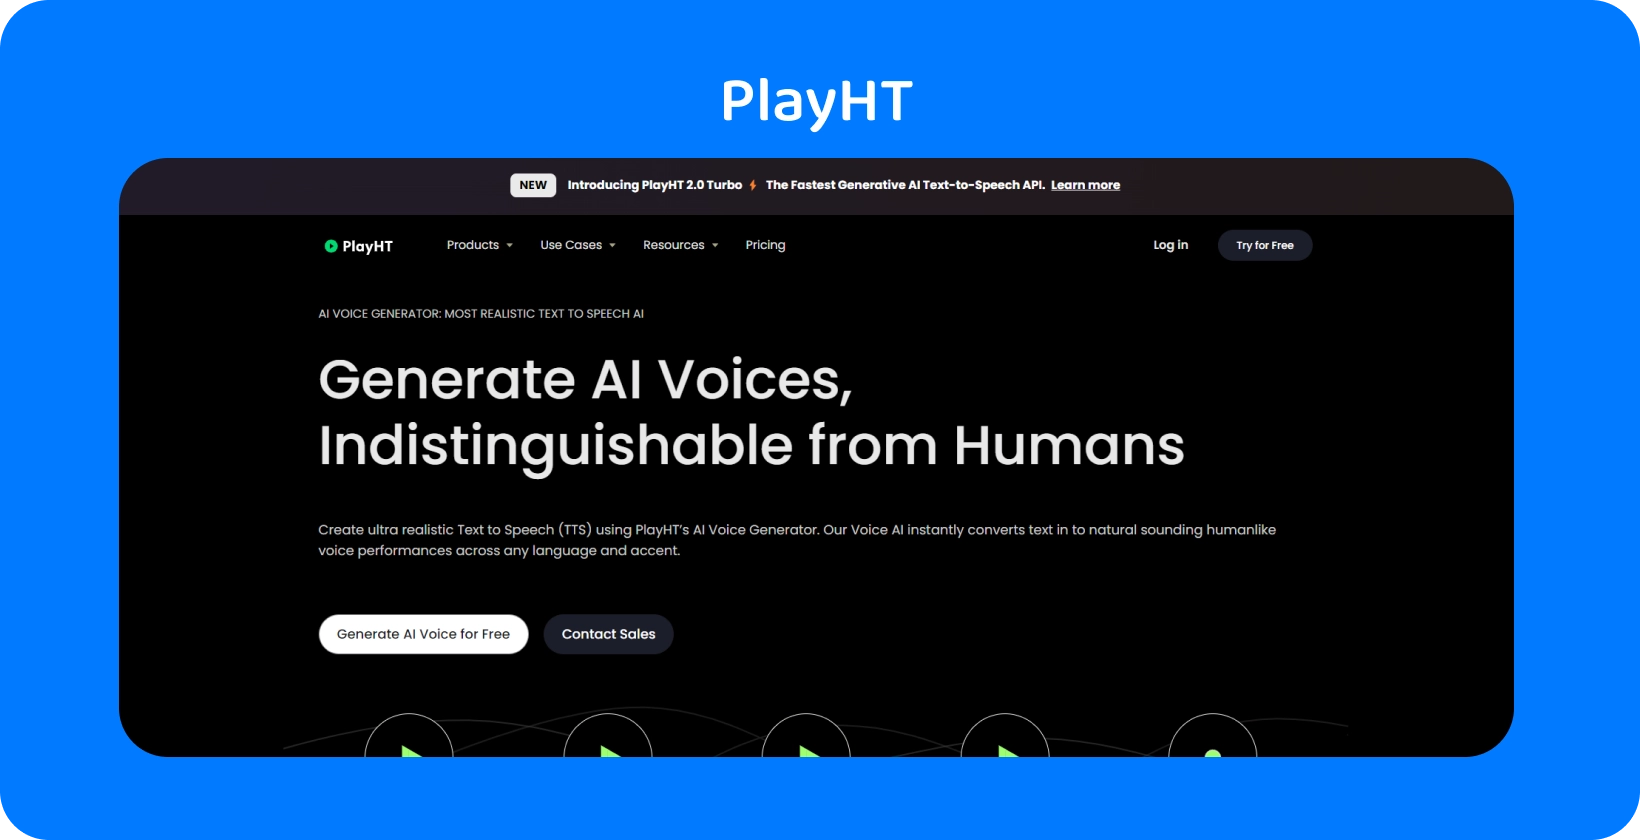 PlayHT offre voci generate dall'AI quasi indistinguibili dal parlato umano per le esigenze di sintesi vocale.